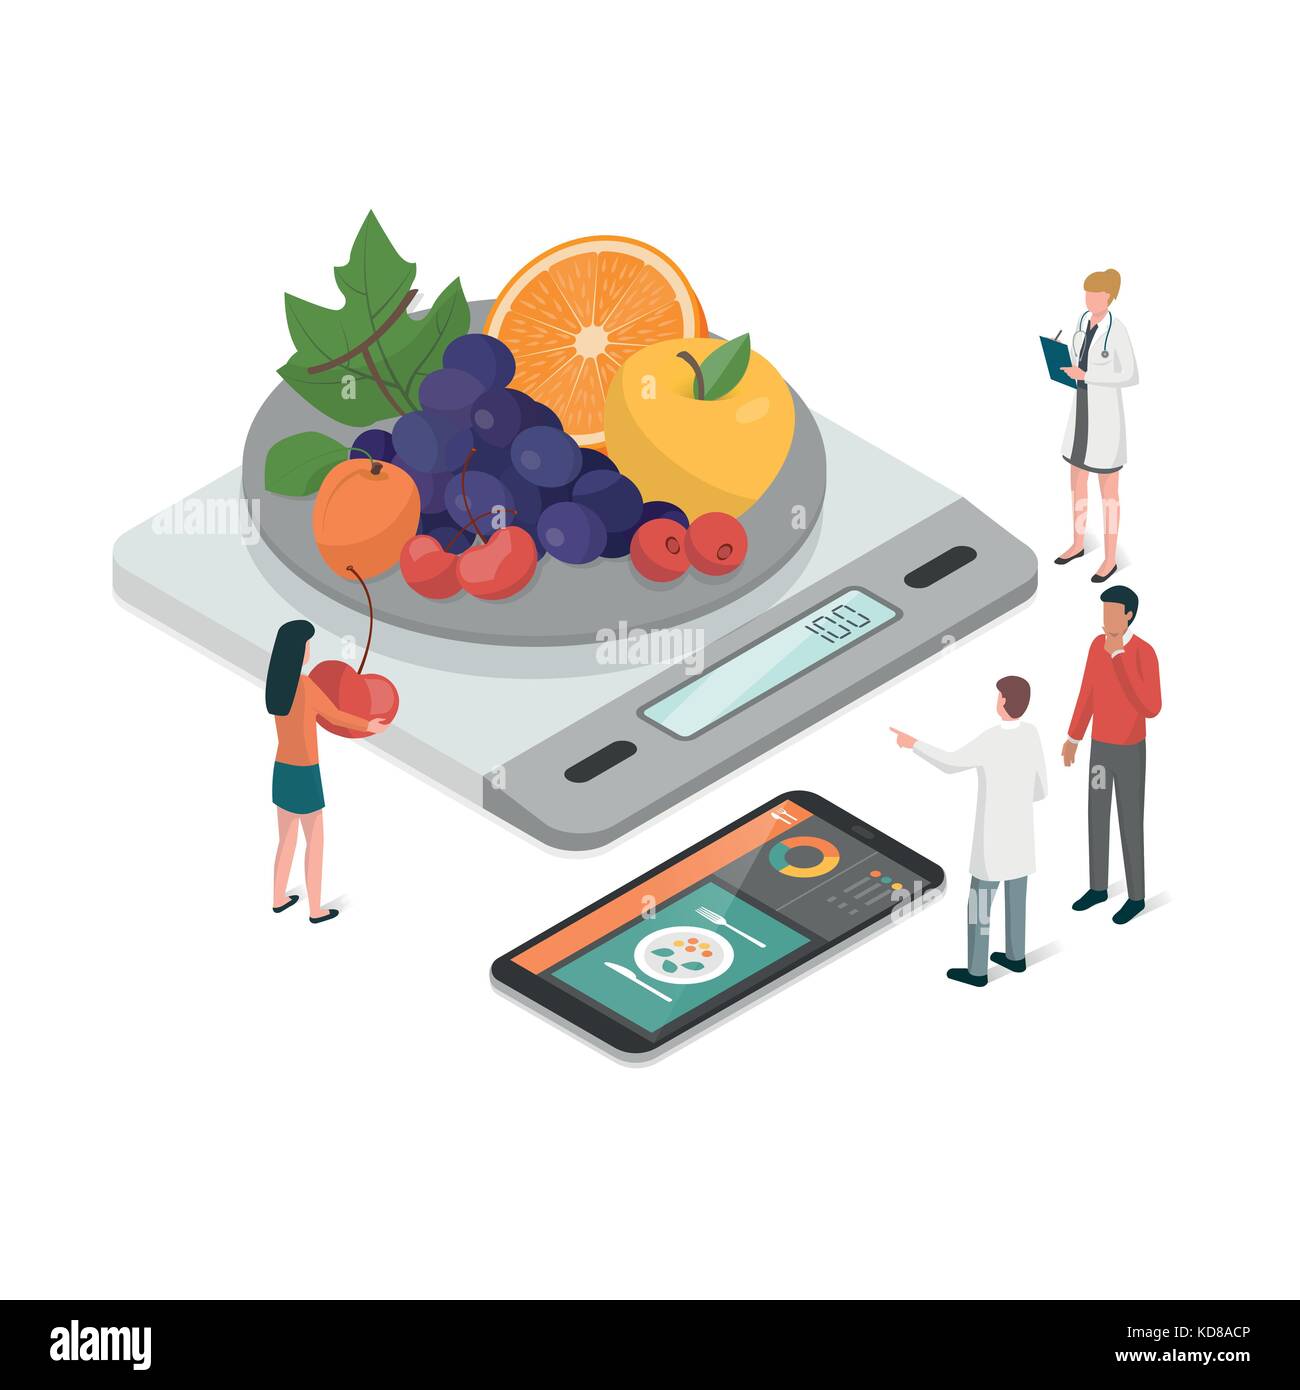 Ernährungswissenschaftler Planung eine Diät mit einem Maßband und einem Essen App auf dem Smartphone, Diät und Ernährung Konzept Stock Vektor